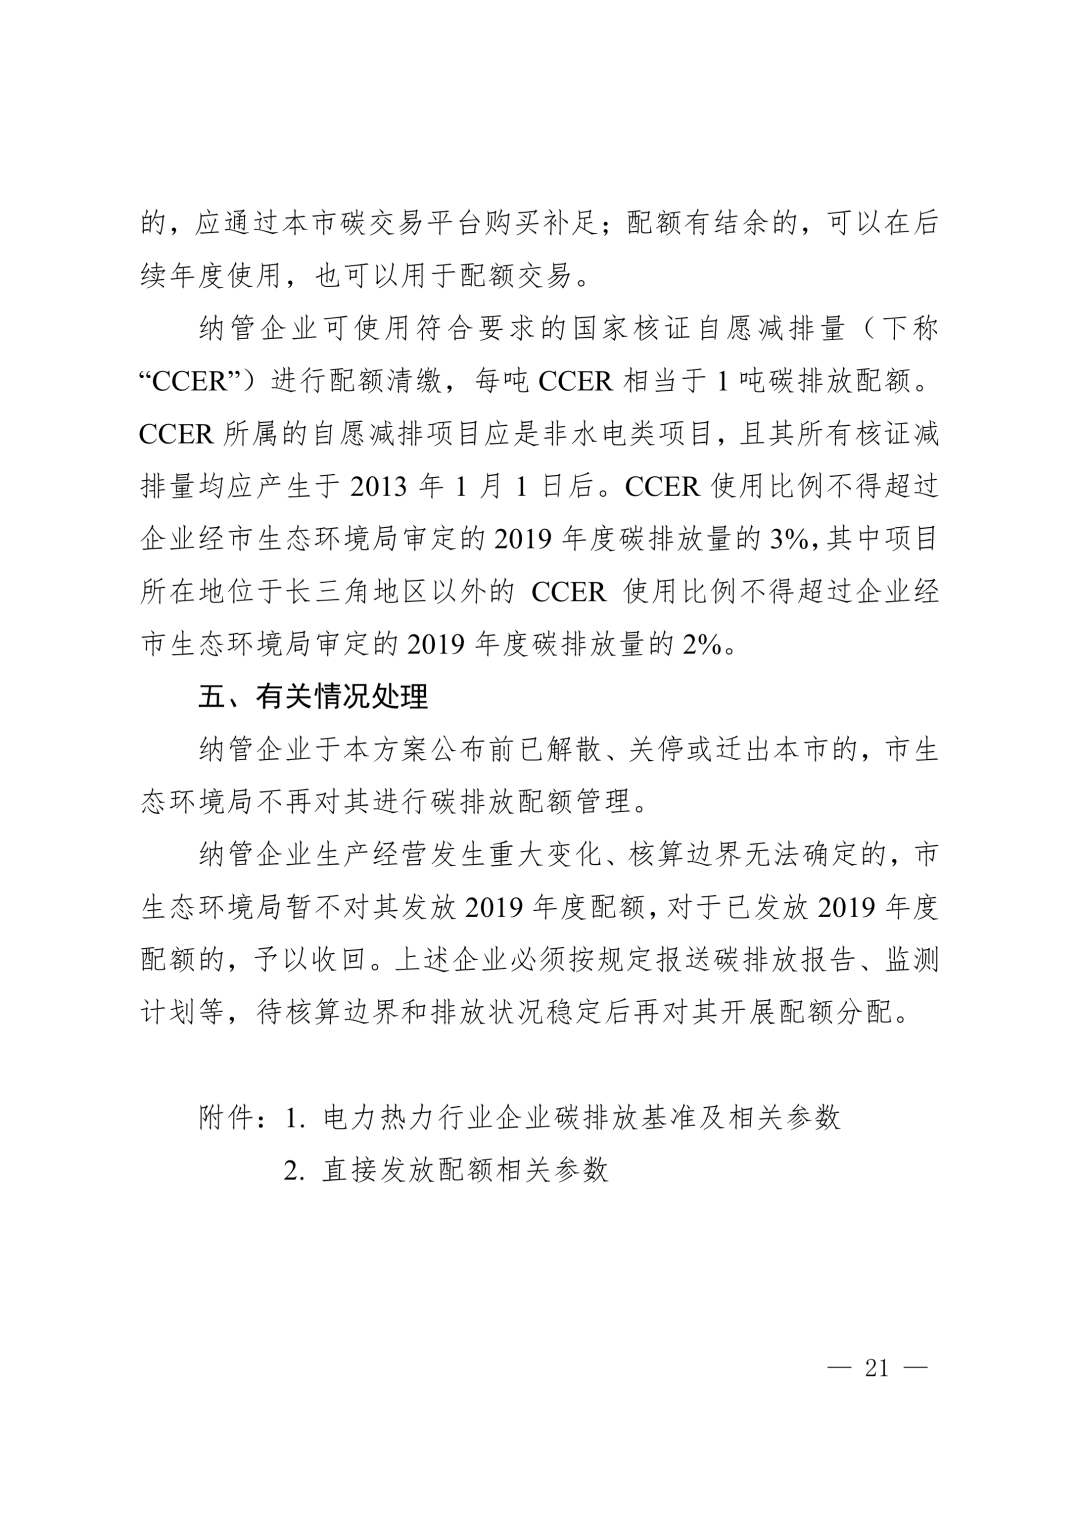 【关注】上海市生态环境局关于印发《上海市纳入碳排放配额管理单位名单（2019版）》及《上海市2019年碳排放配额分配方案》的通知(图21)